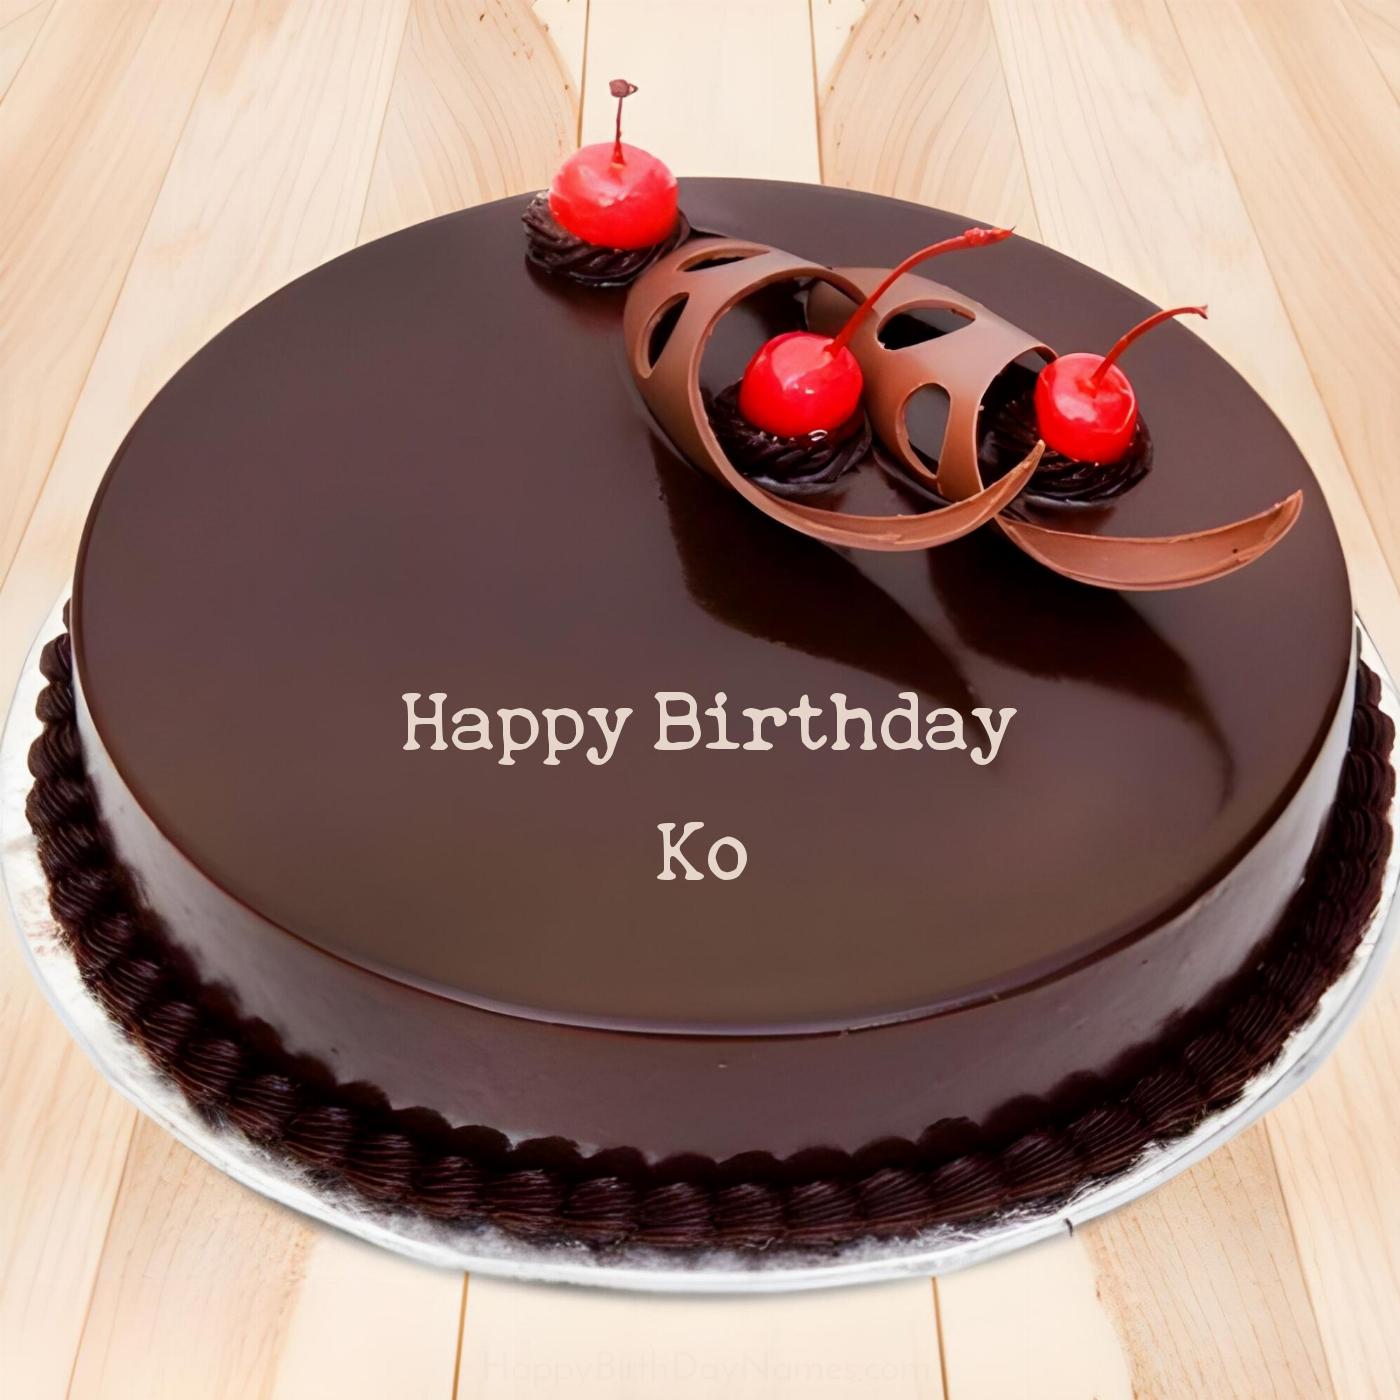 Happy Birthday Ko Chocolate Cherry Cake